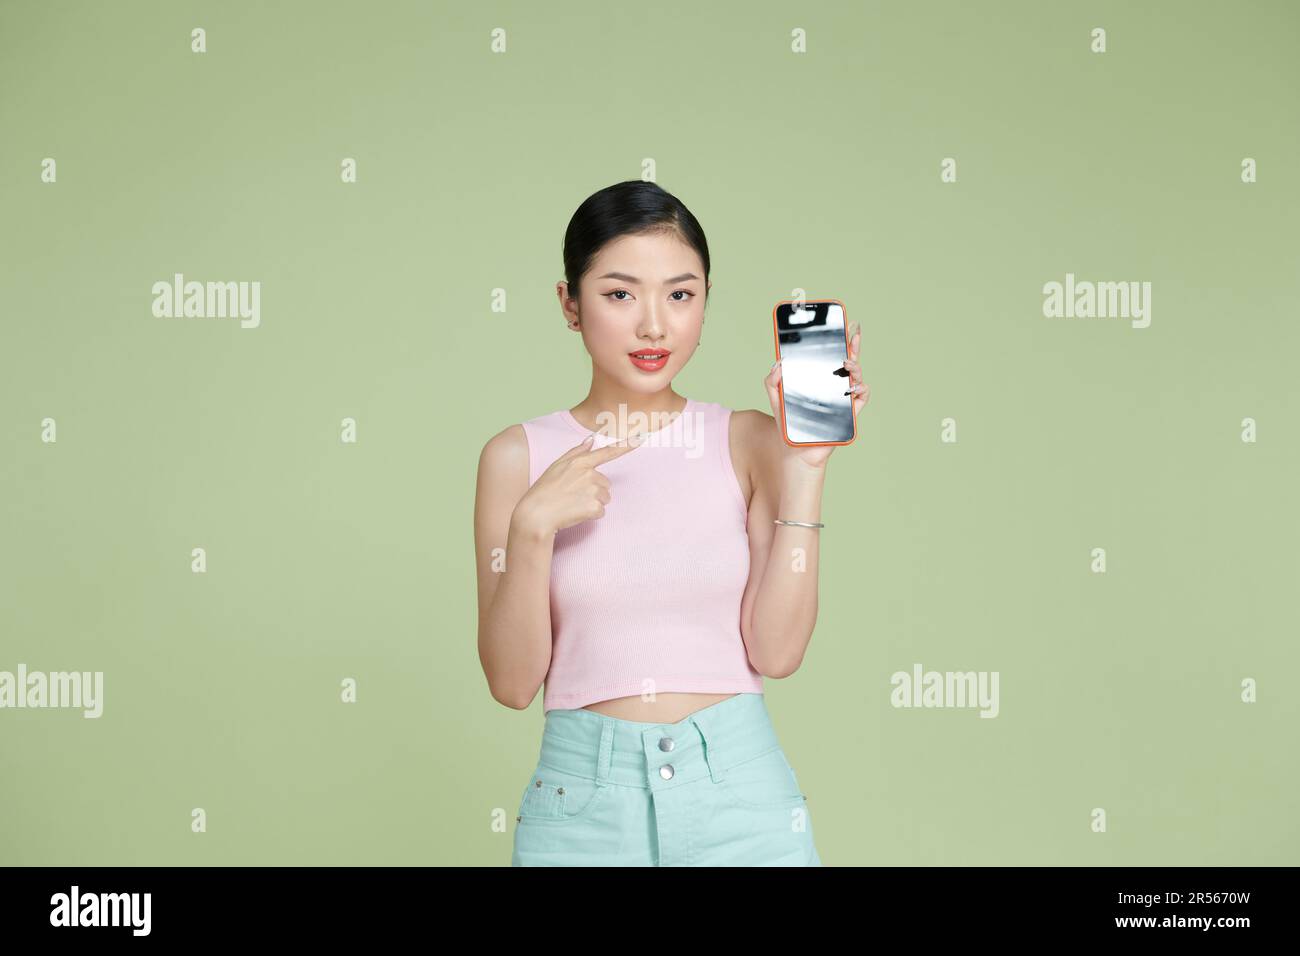 Une jeune femme asiatique tient le téléphone à la main et le pointe avec une expression ludique Banque D'Images